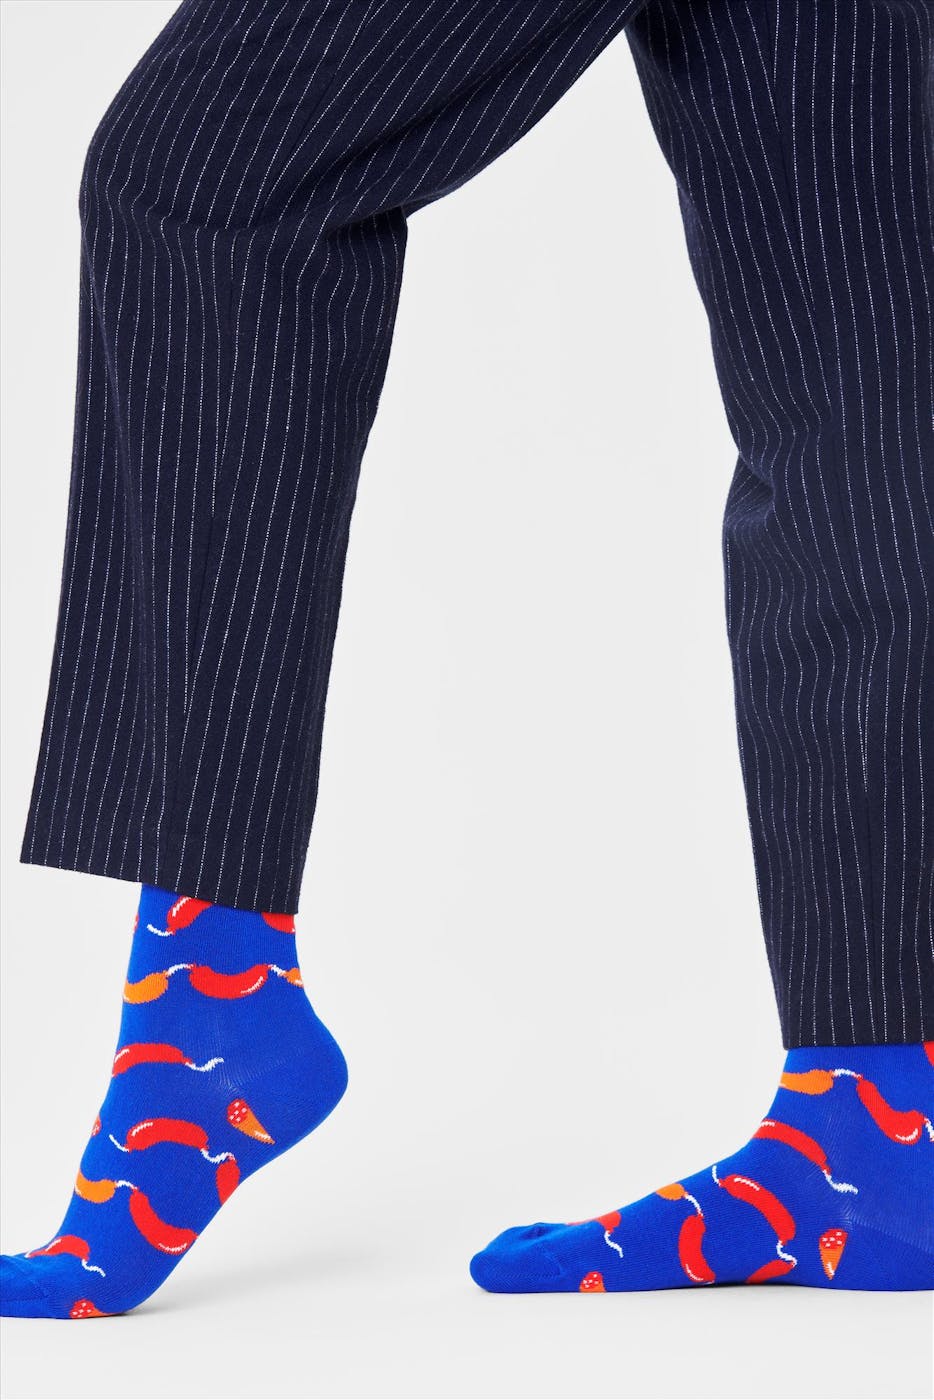 Happy Socks - Blauw-rode Sausage Sokken, maat 36-40